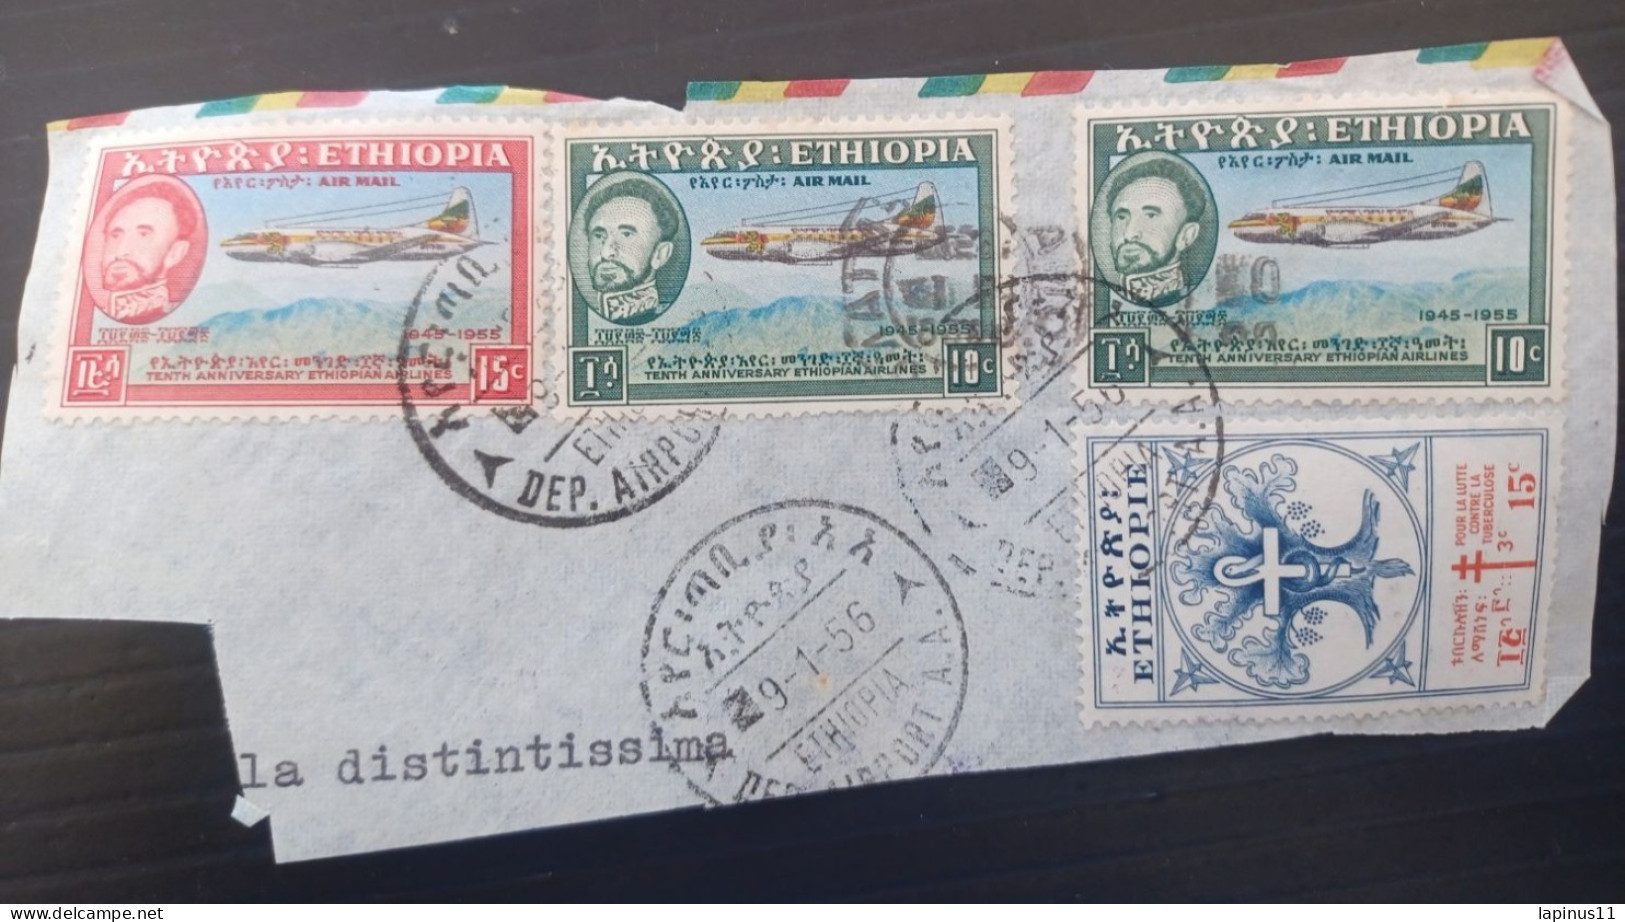 ETIOPIA 1956 AIRMAILYVERT N 304 LUTTE CONTRE LA TUBERCULOSE N 35-36 AIRMAIL FRAGMANT - Ethiopia